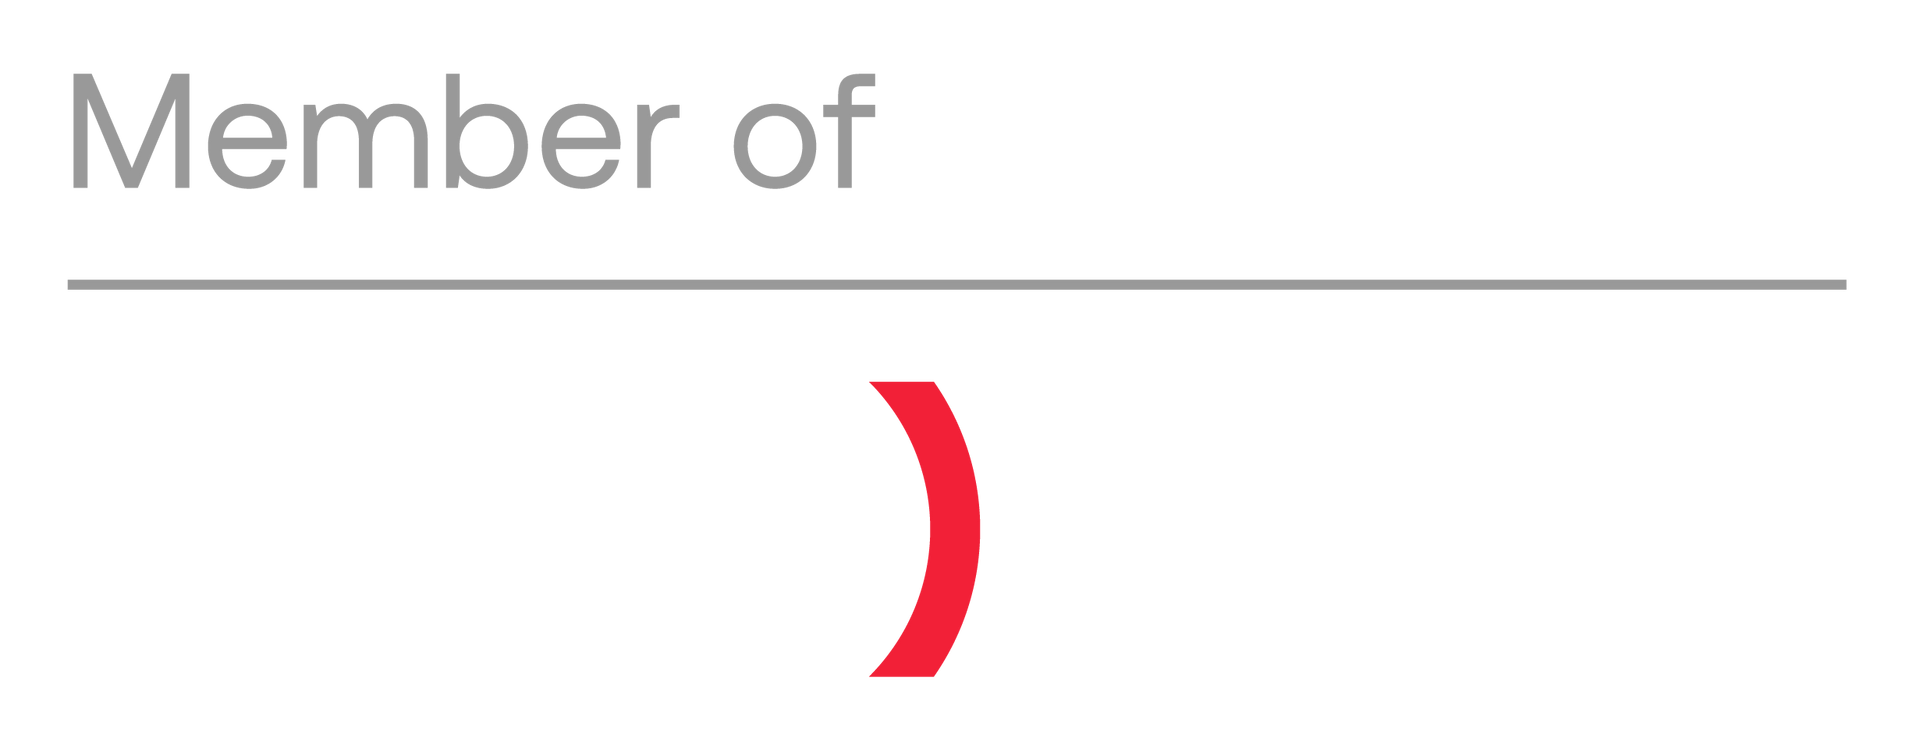 Member of CSG Group logo